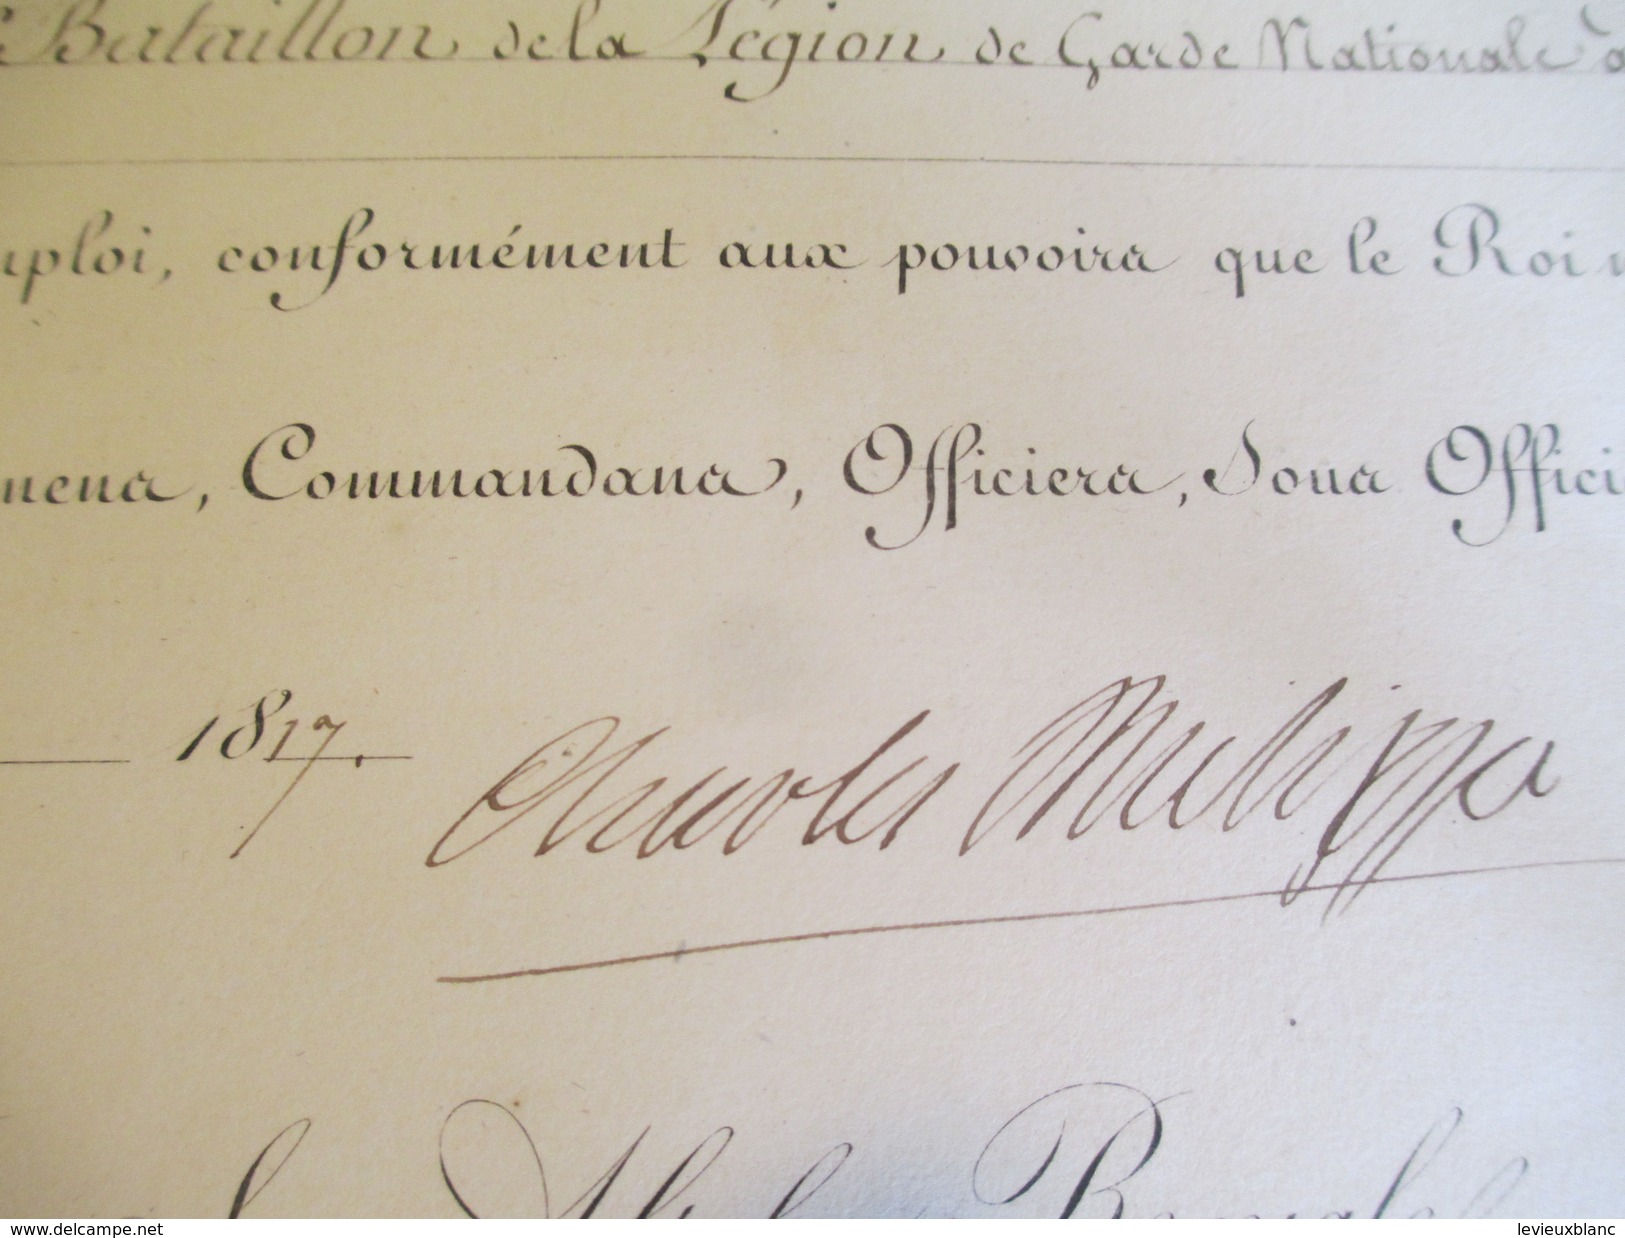 Brevet /Autographe/Charles Philippe De France,Comte D'Artois/Épernay Marne/Nomination/Hilaire/Chef Bataillon/1817 DIP208 - Diplômes & Bulletins Scolaires